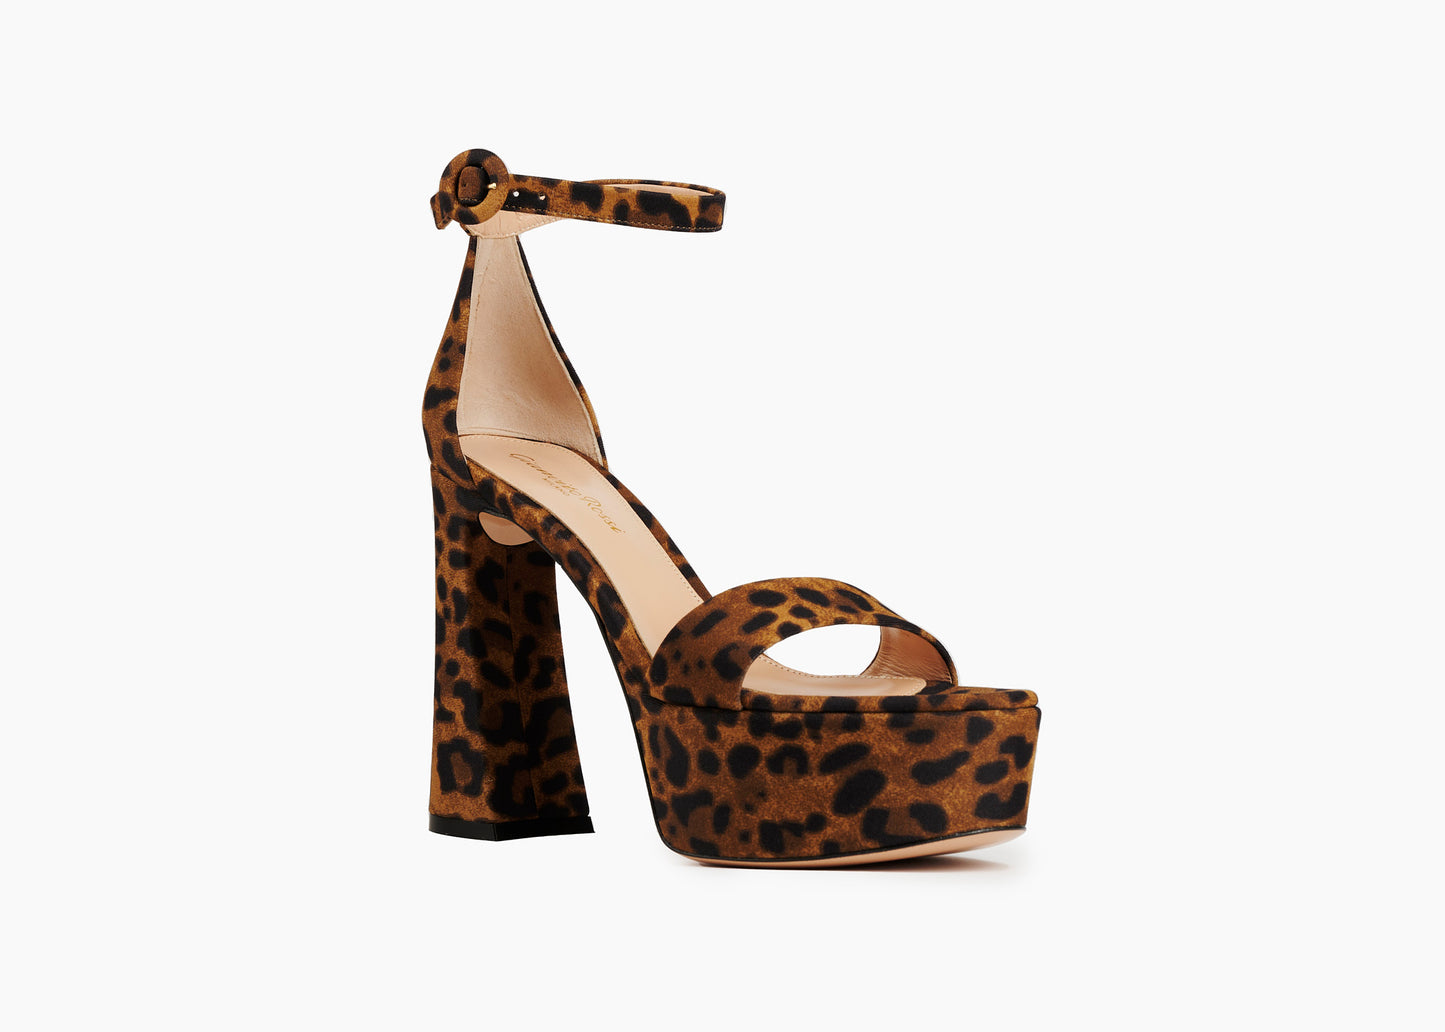 SALE Holly Platform Sandal Leopard was $1595